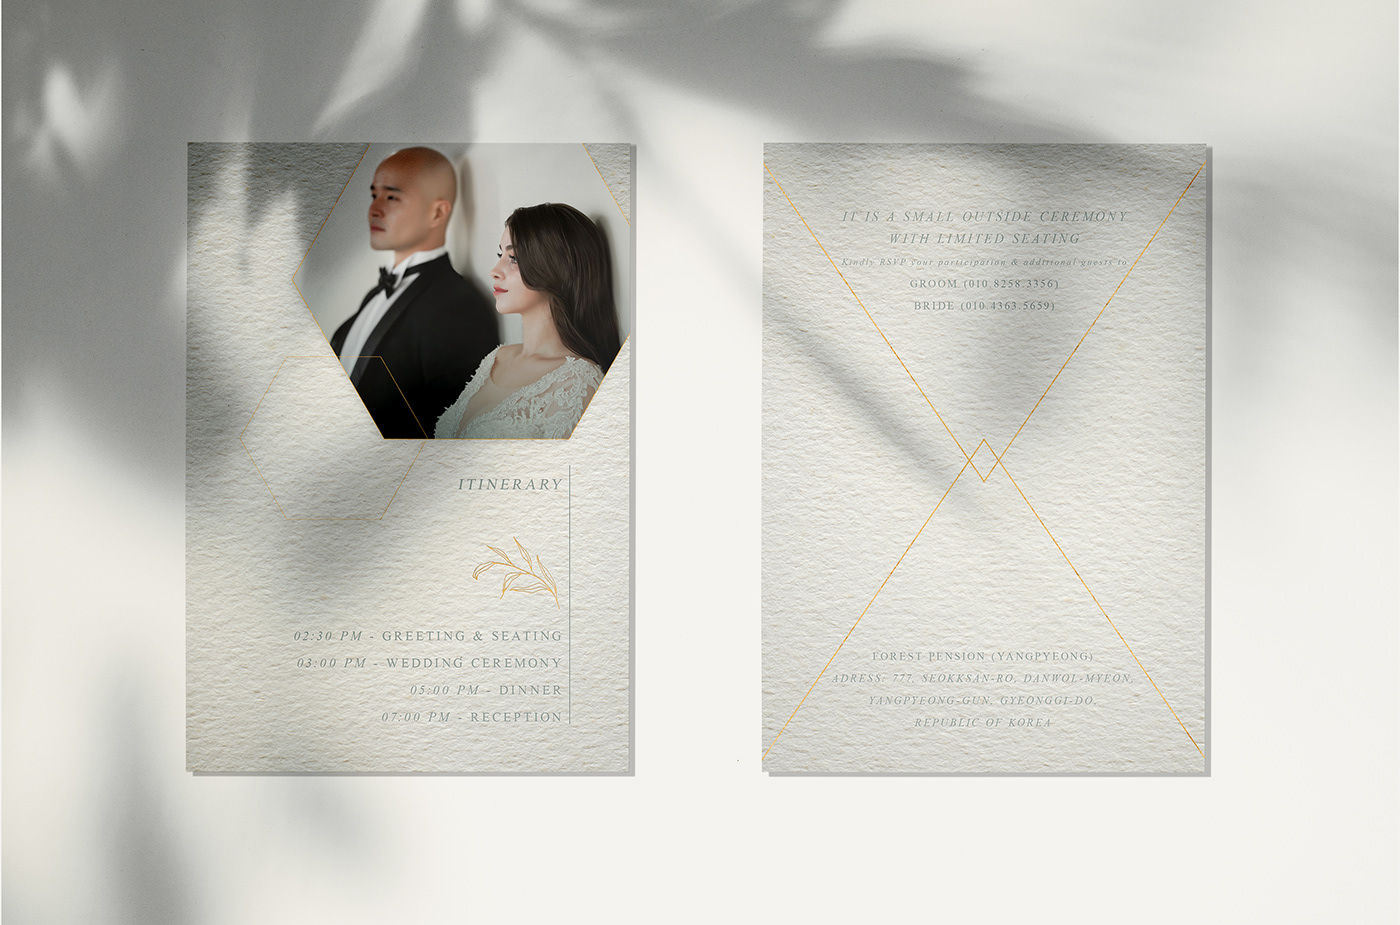 Invitation design Graphic Designer wedding invitation Event Event Design graphic design  photoshop invite design Wedding Invitation Design